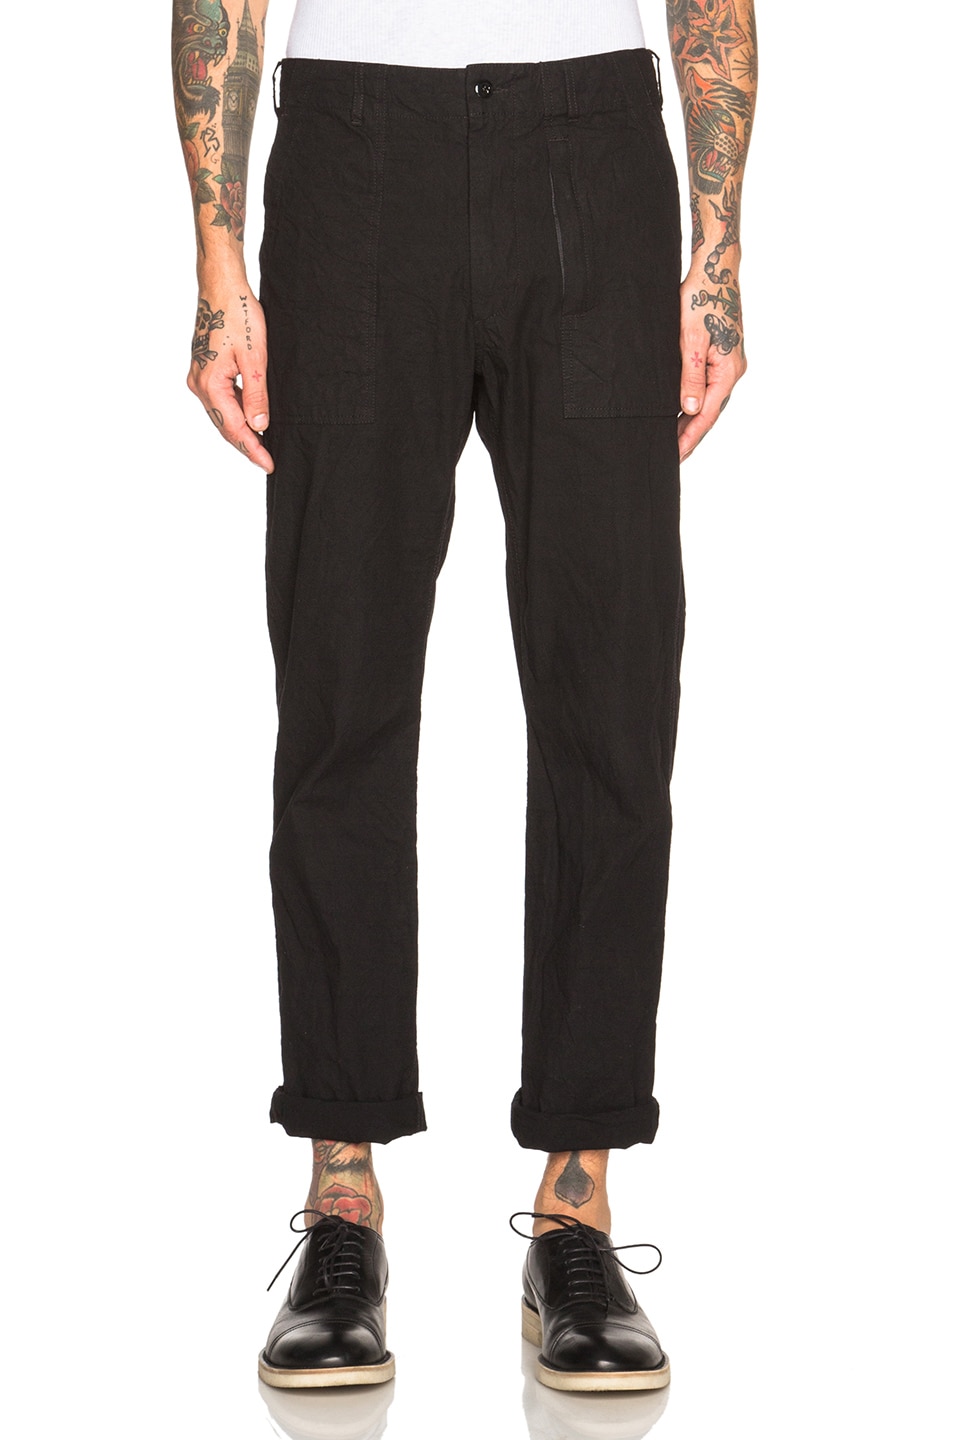 Image 1 of Engineered Garments Fatigue Pants in Black Denim